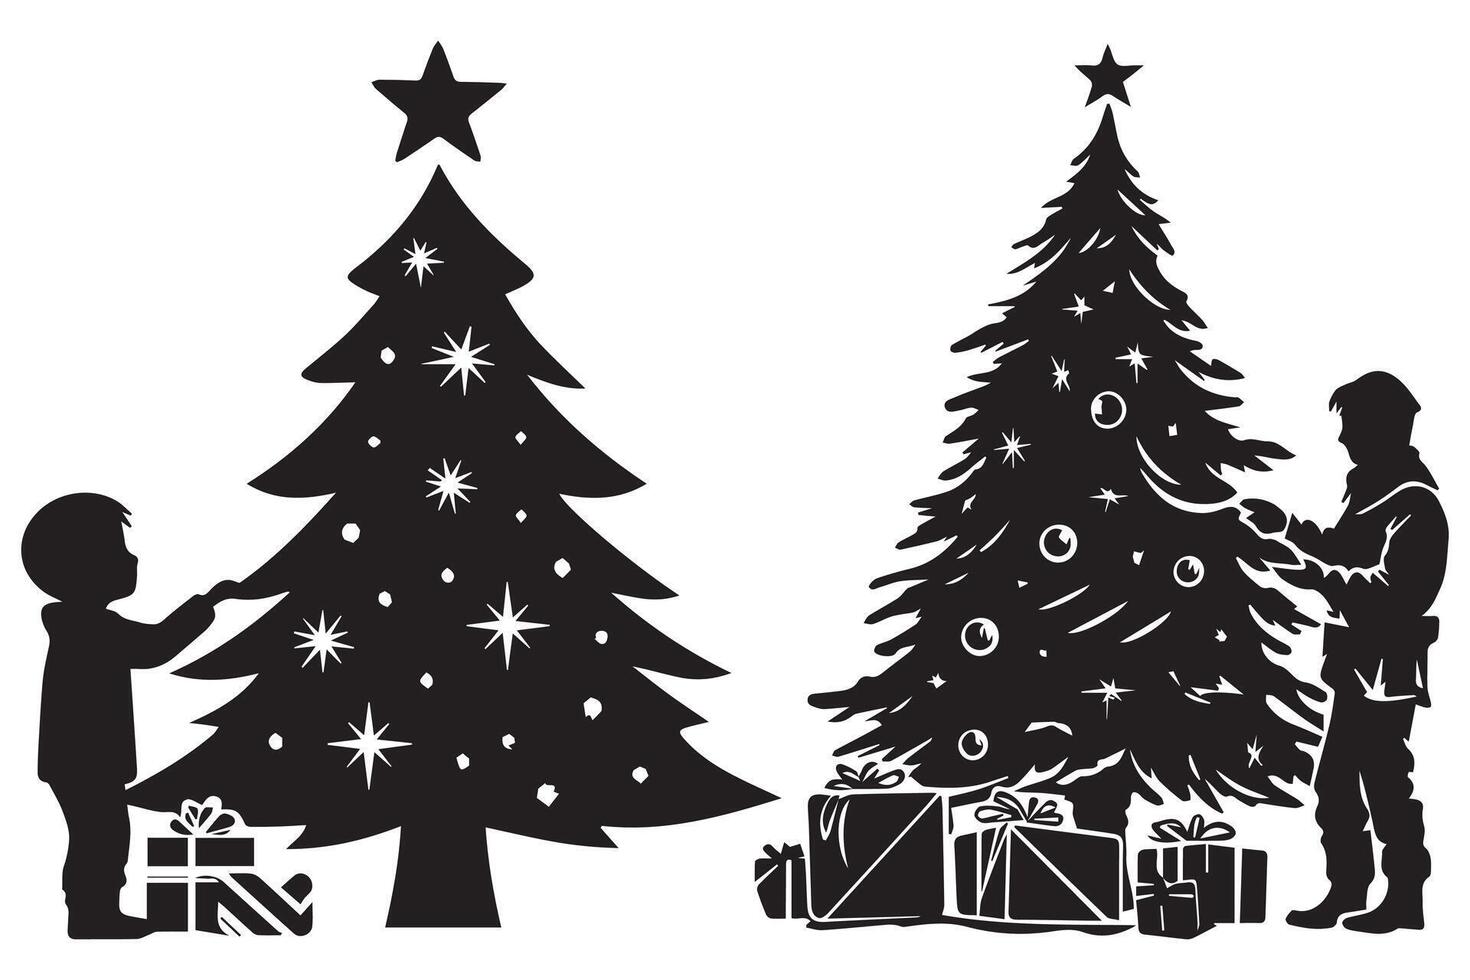 silhouette de une famille décorer une Noël arbre avec tout éléments comme séparé objets vecteur